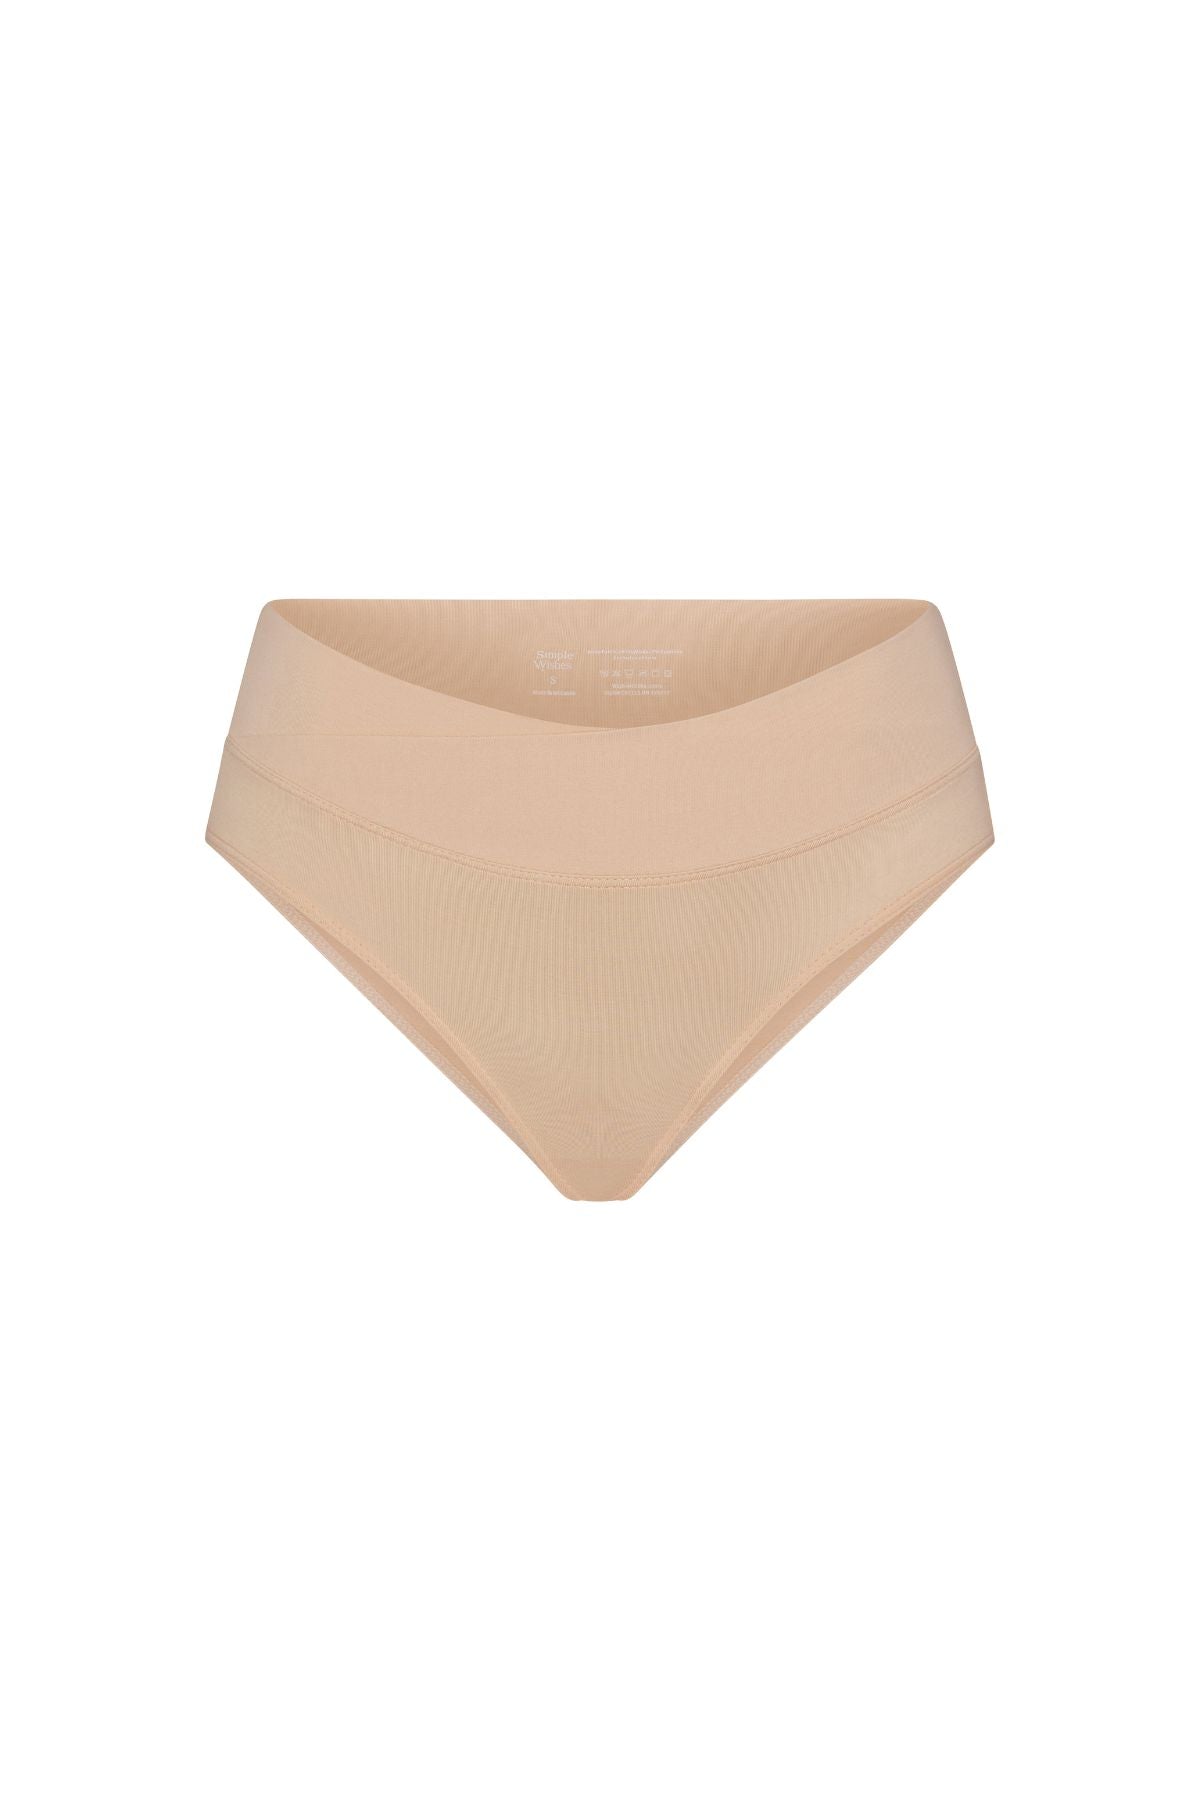 V-Shaped Underwear – SSW Merch